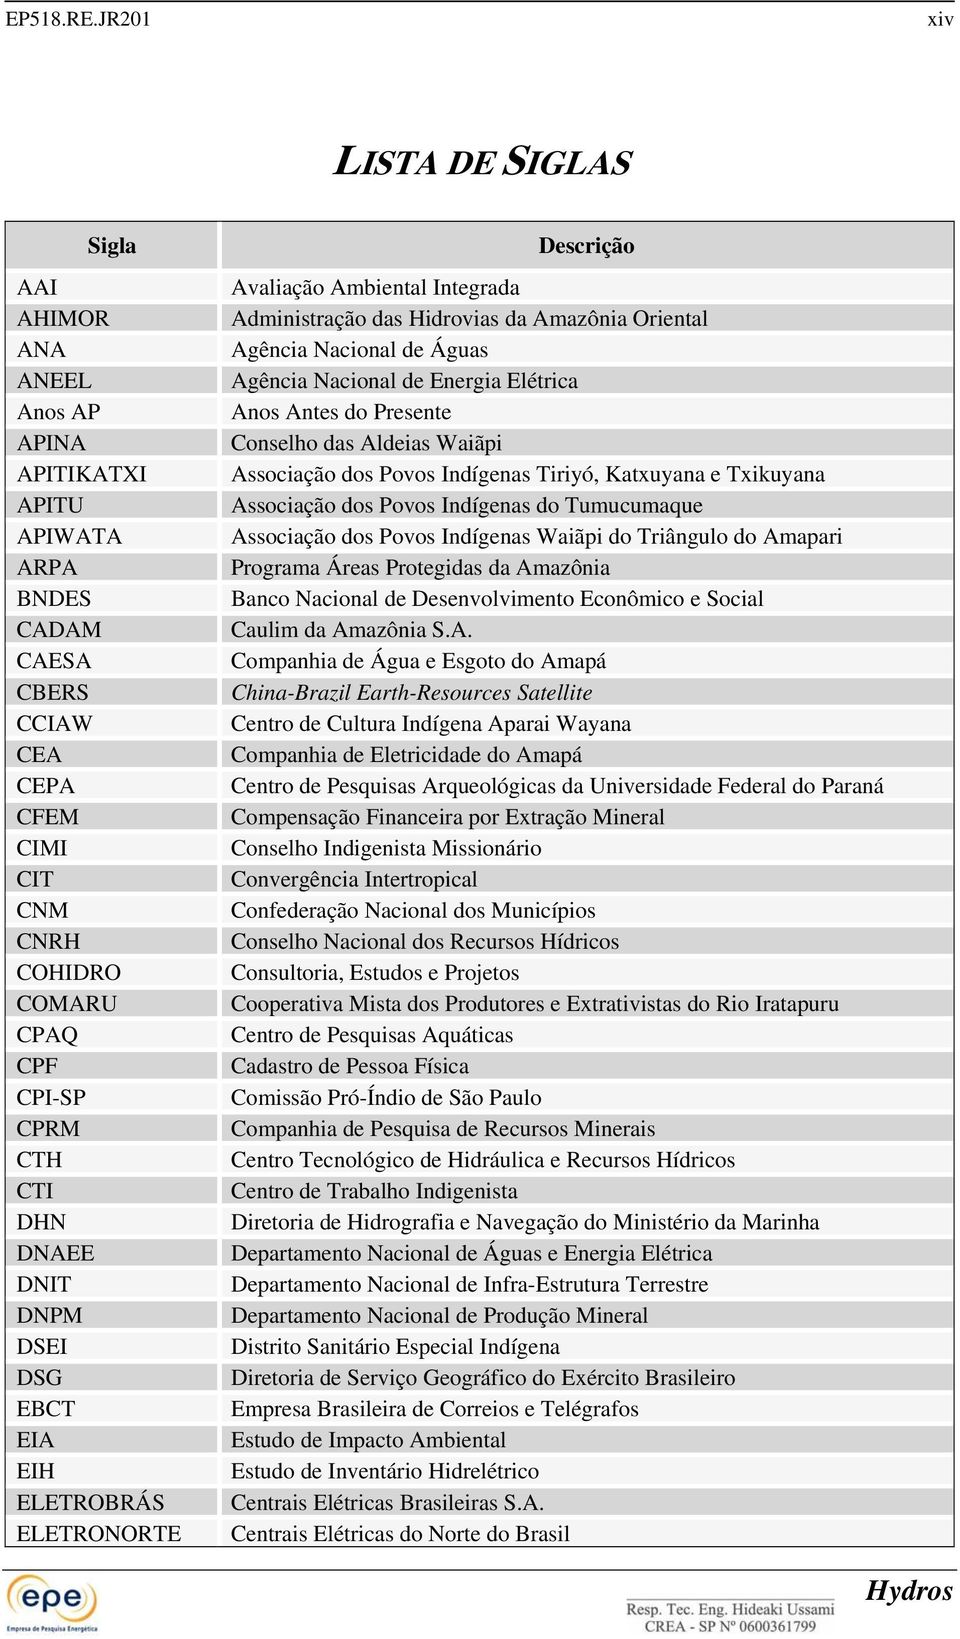 CTI DHN DNAEE DNIT DNPM DSEI DSG EBCT EIA EIH ELETROBRÁS ELETRONORTE Descrição Avaliação Ambiental Integrada Administração das Hidrovias da Amazônia Oriental Agência Nacional de Águas Agência